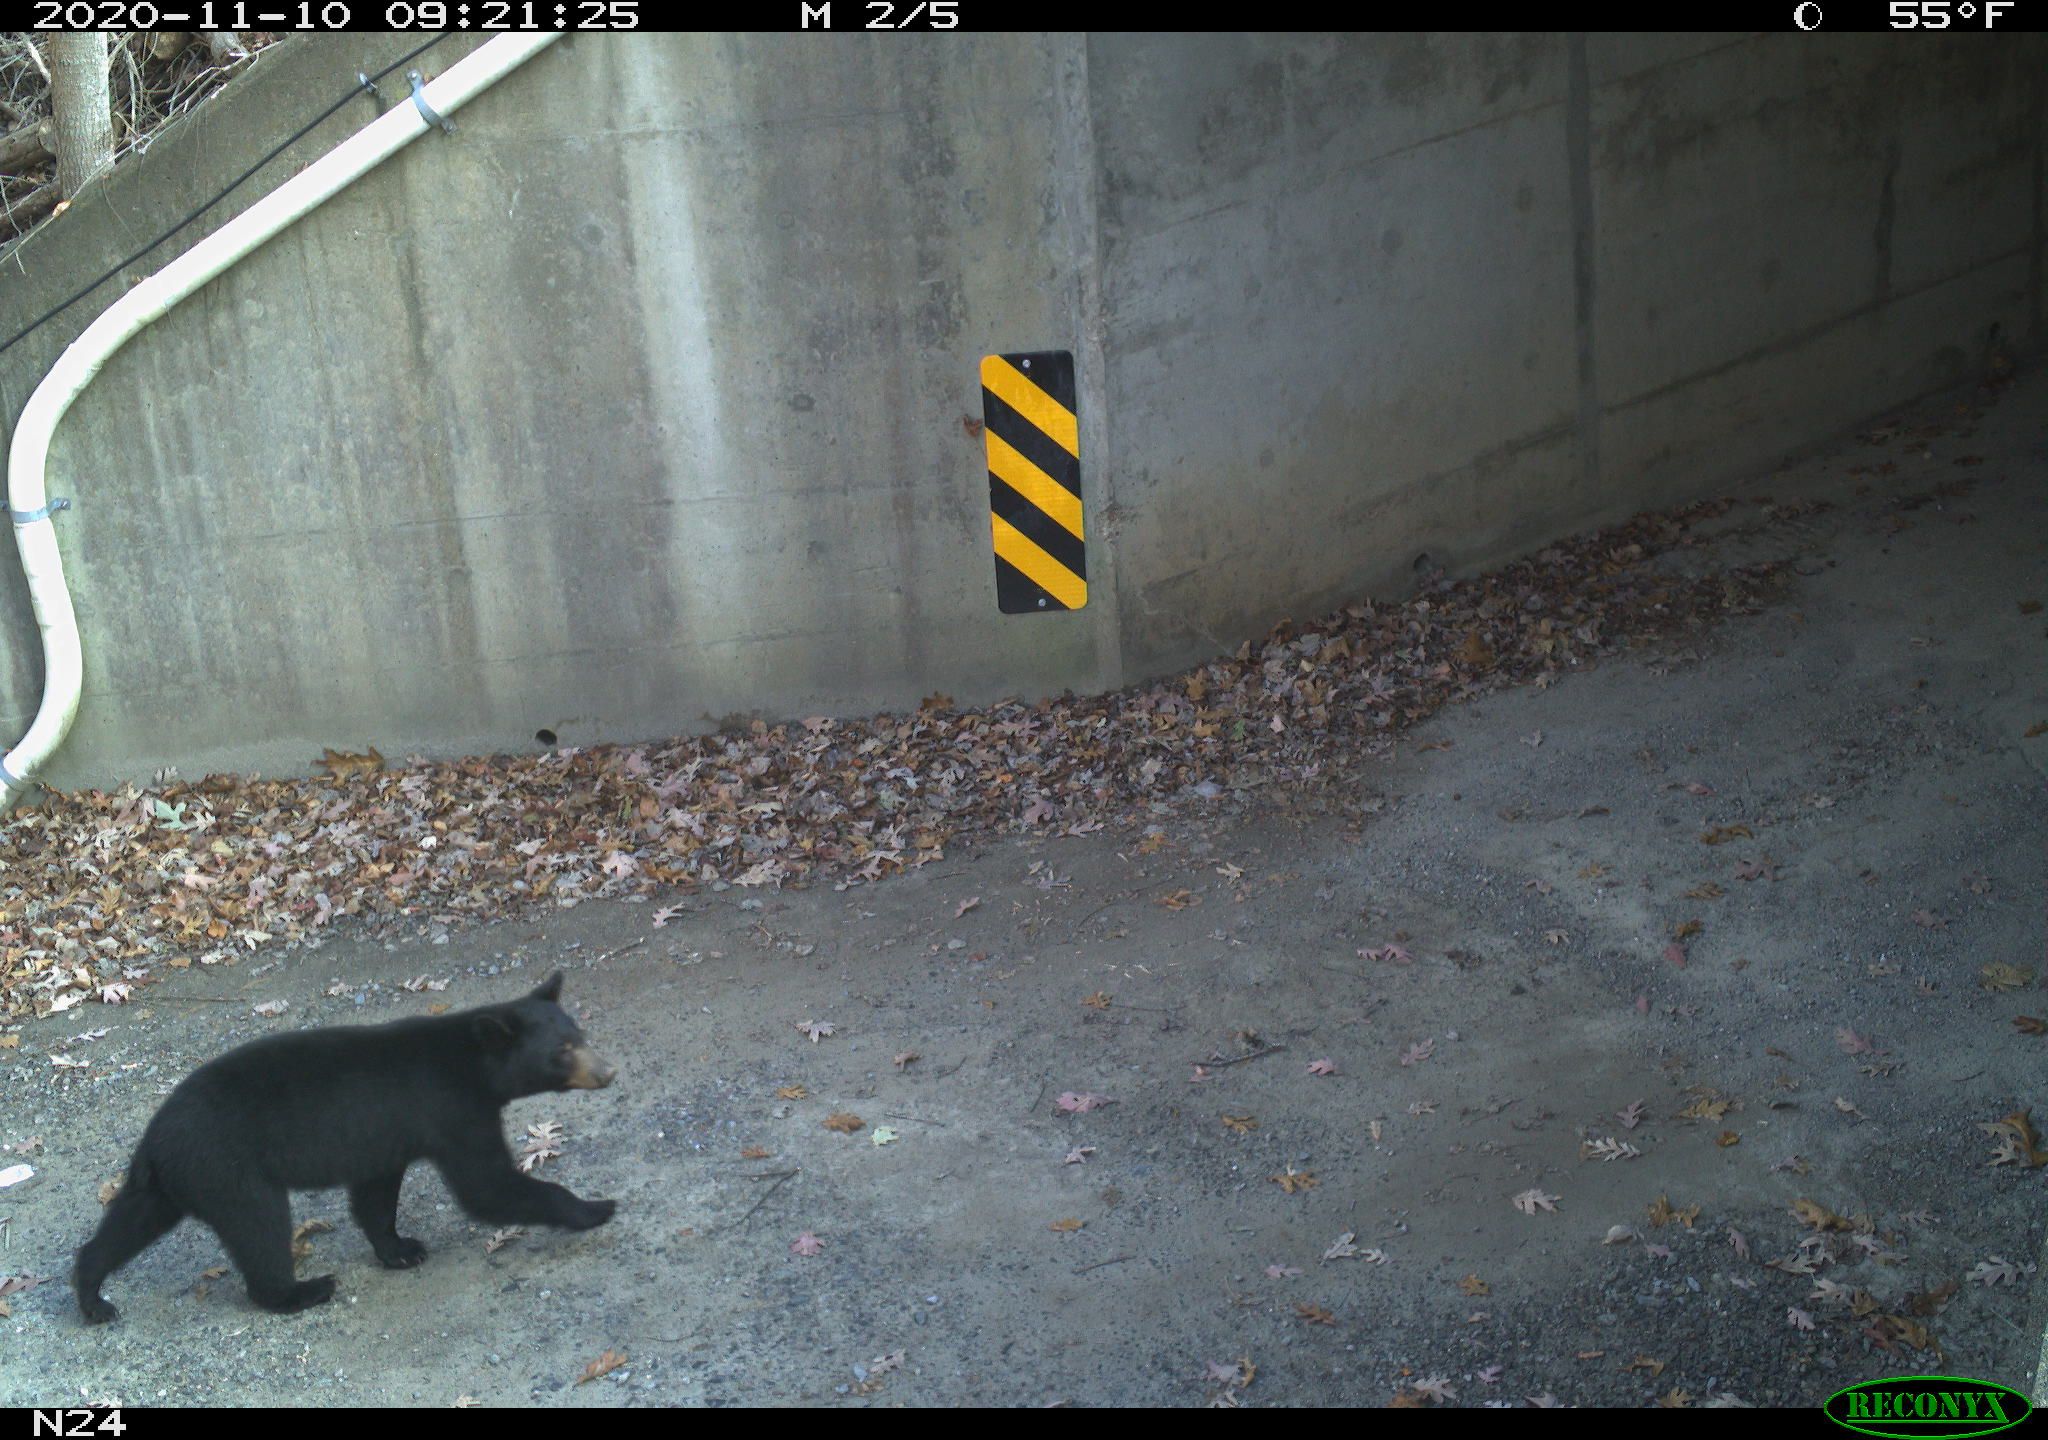 A bear walks toward a highway underpass